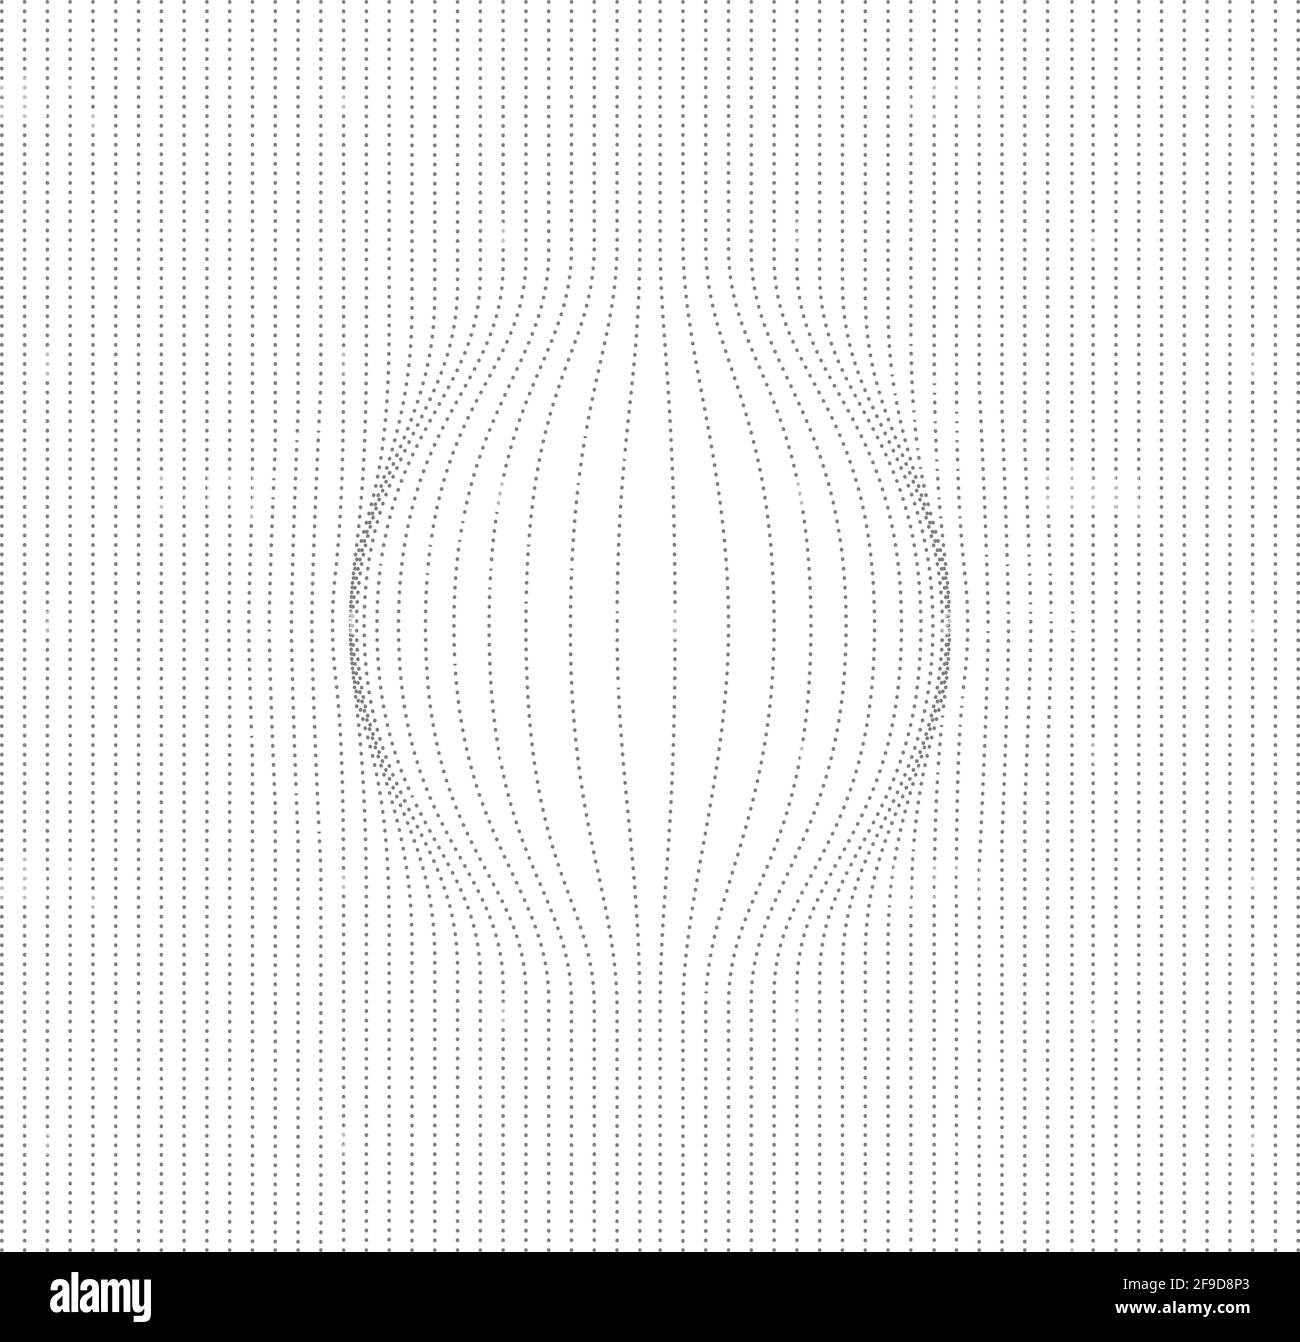 Optische Illusion aufgebläht Ball-Effekt. Linienkugelvektor. 3d-Form  Unterlage Linien grafische abstrakte Illustration Stock-Vektorgrafik - Alamy